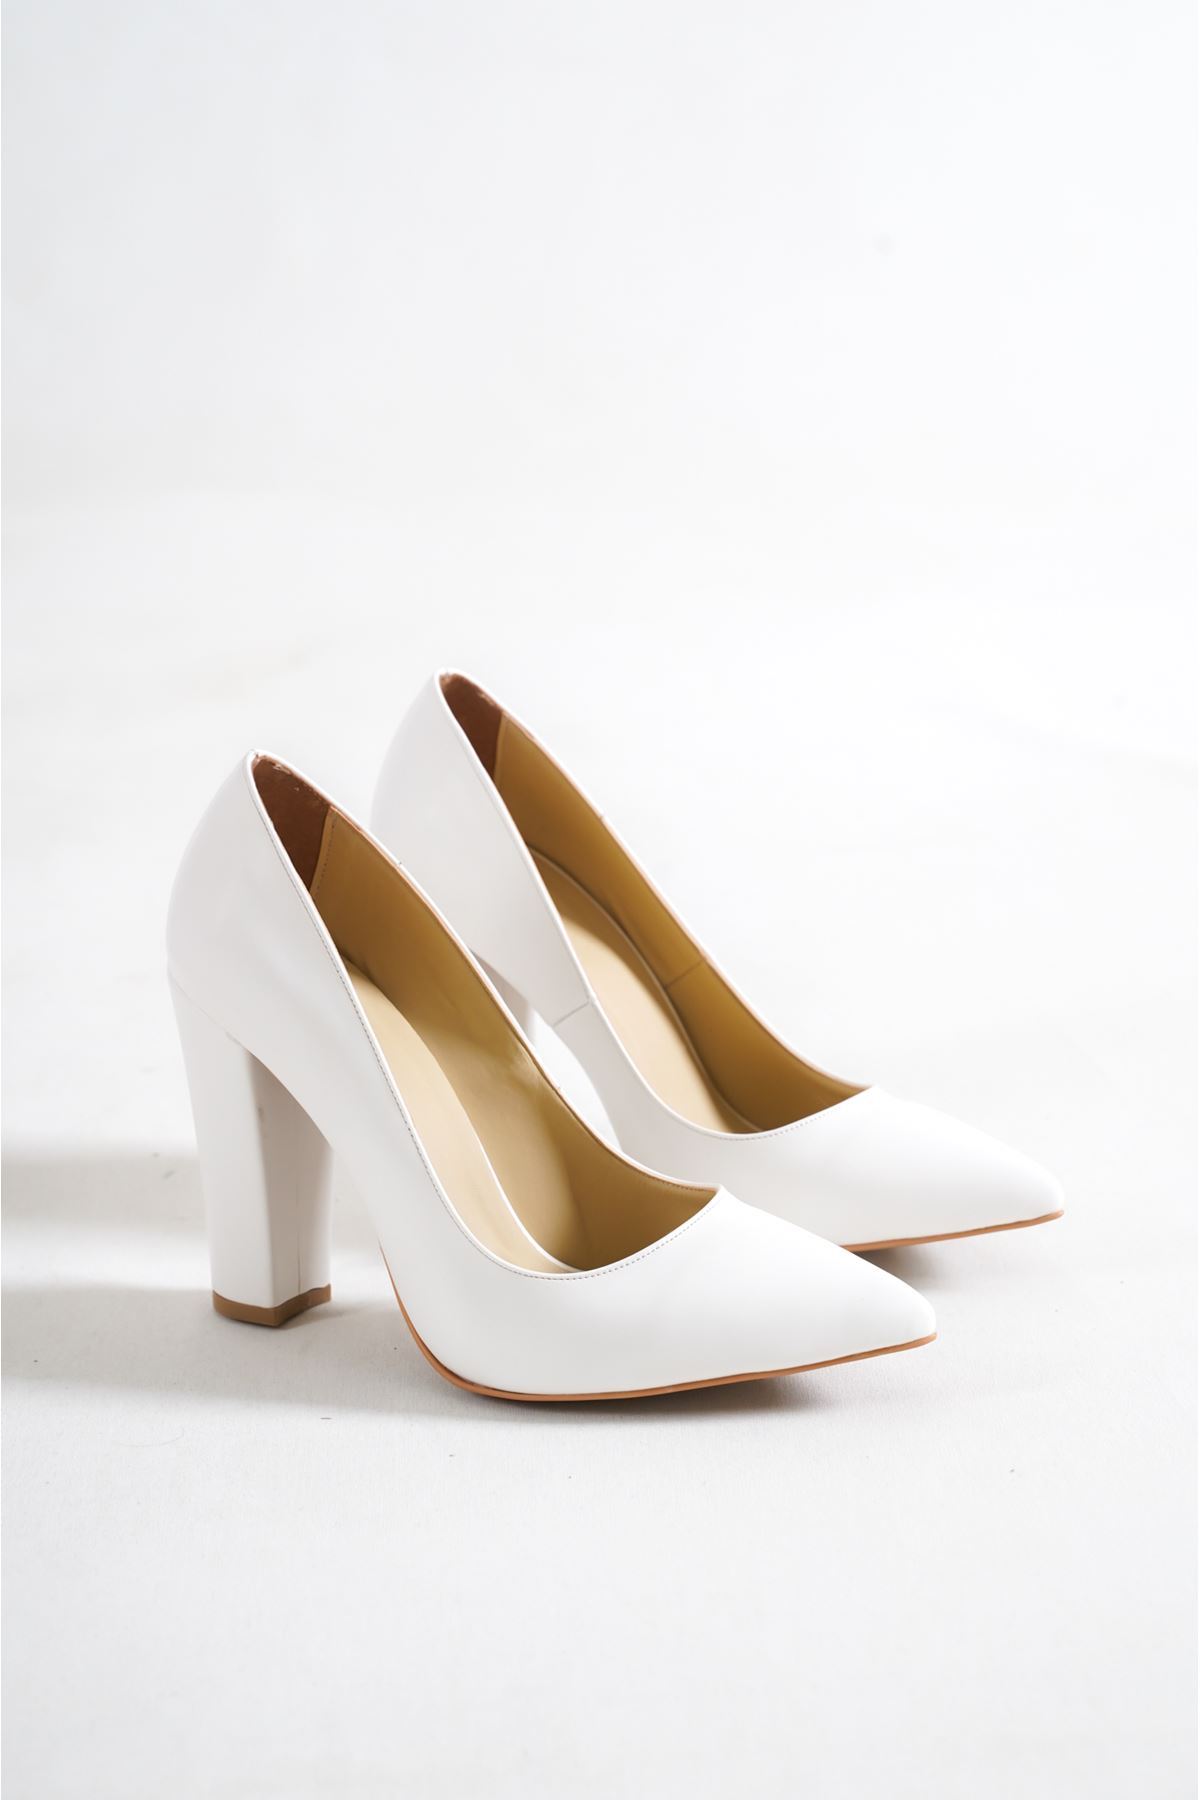 Tokyo Beyaz Cilt Kadın Kalın Topuklu Ayakkabı Stiletto